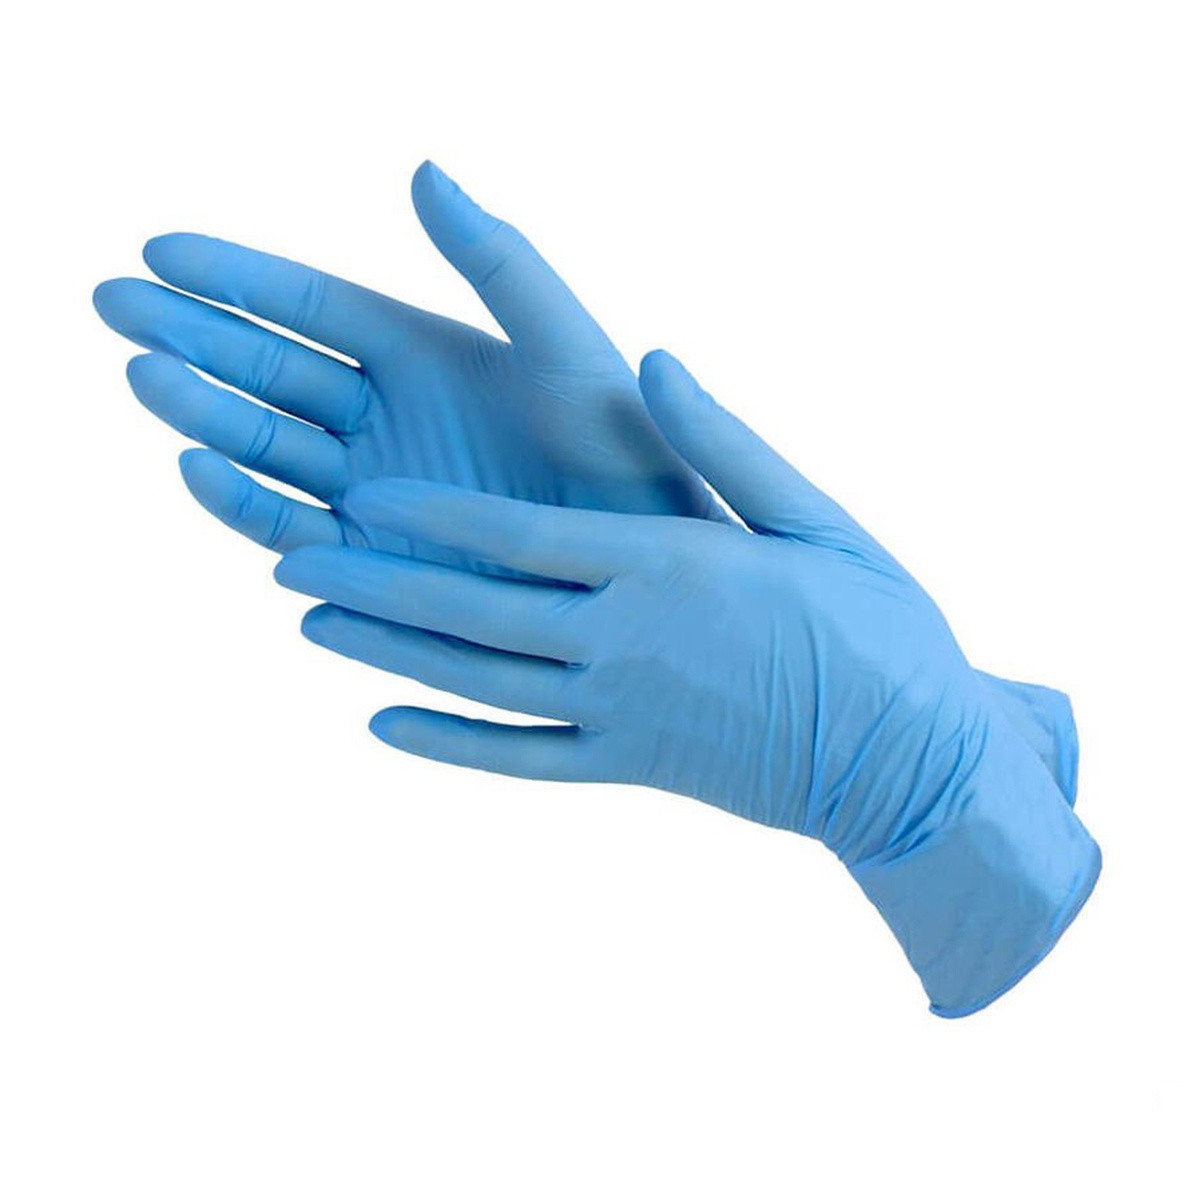 Нитриловые перчатки цвет голубой размера M  100шт/ 50 пар